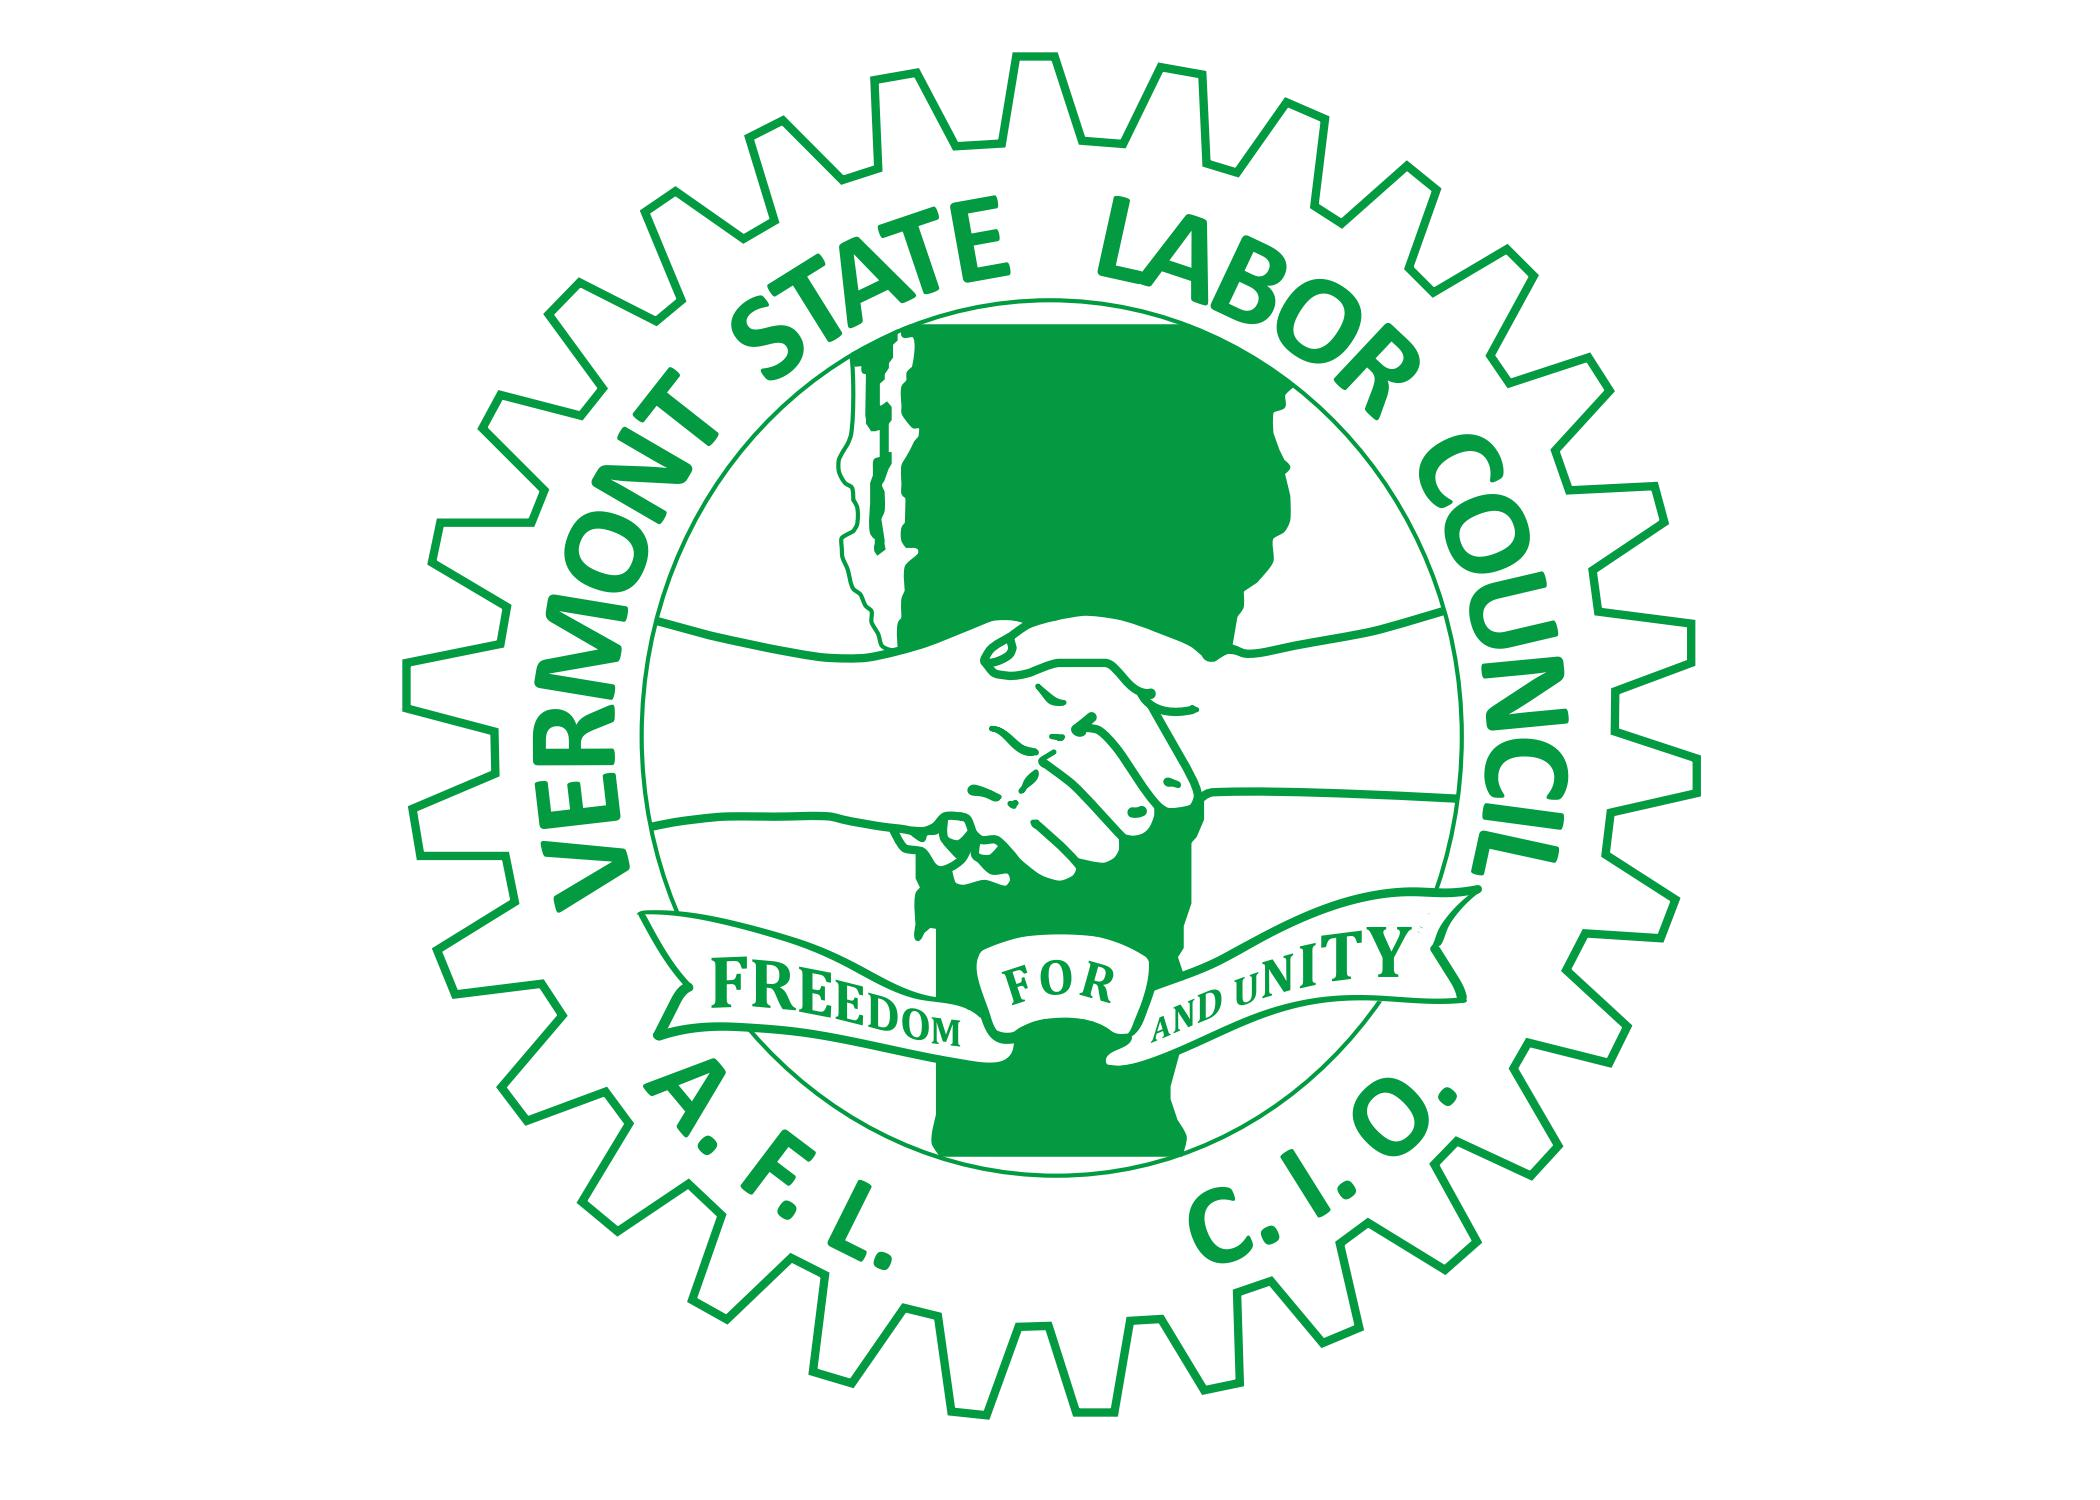 Vermont State Labor Council, AFL-CIO